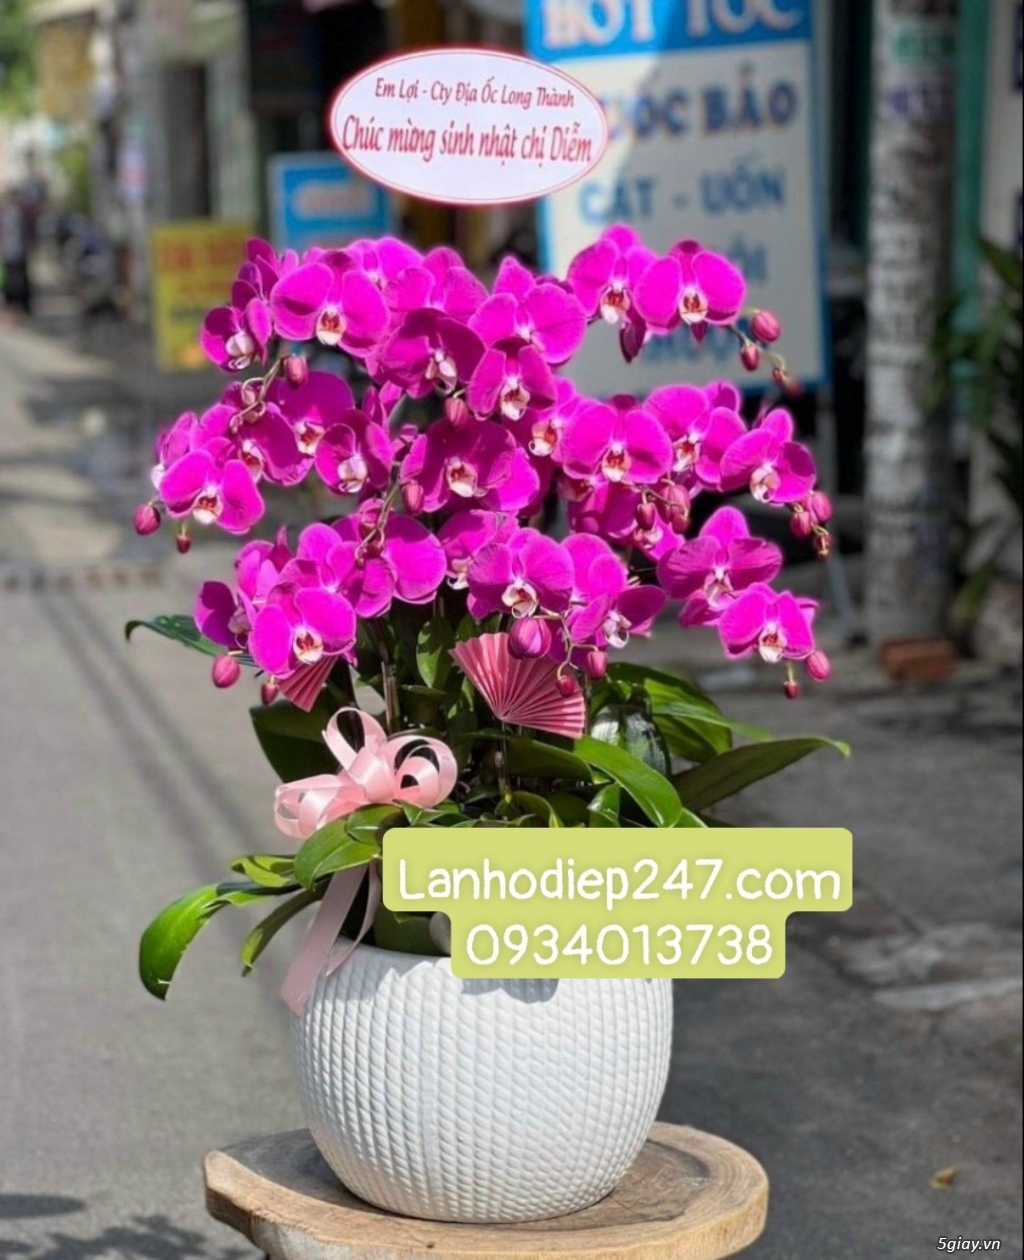 Shop hoa tươi 247 chuyên cung cấp lan hồ điệp tại tphcm 0934013738 - 3